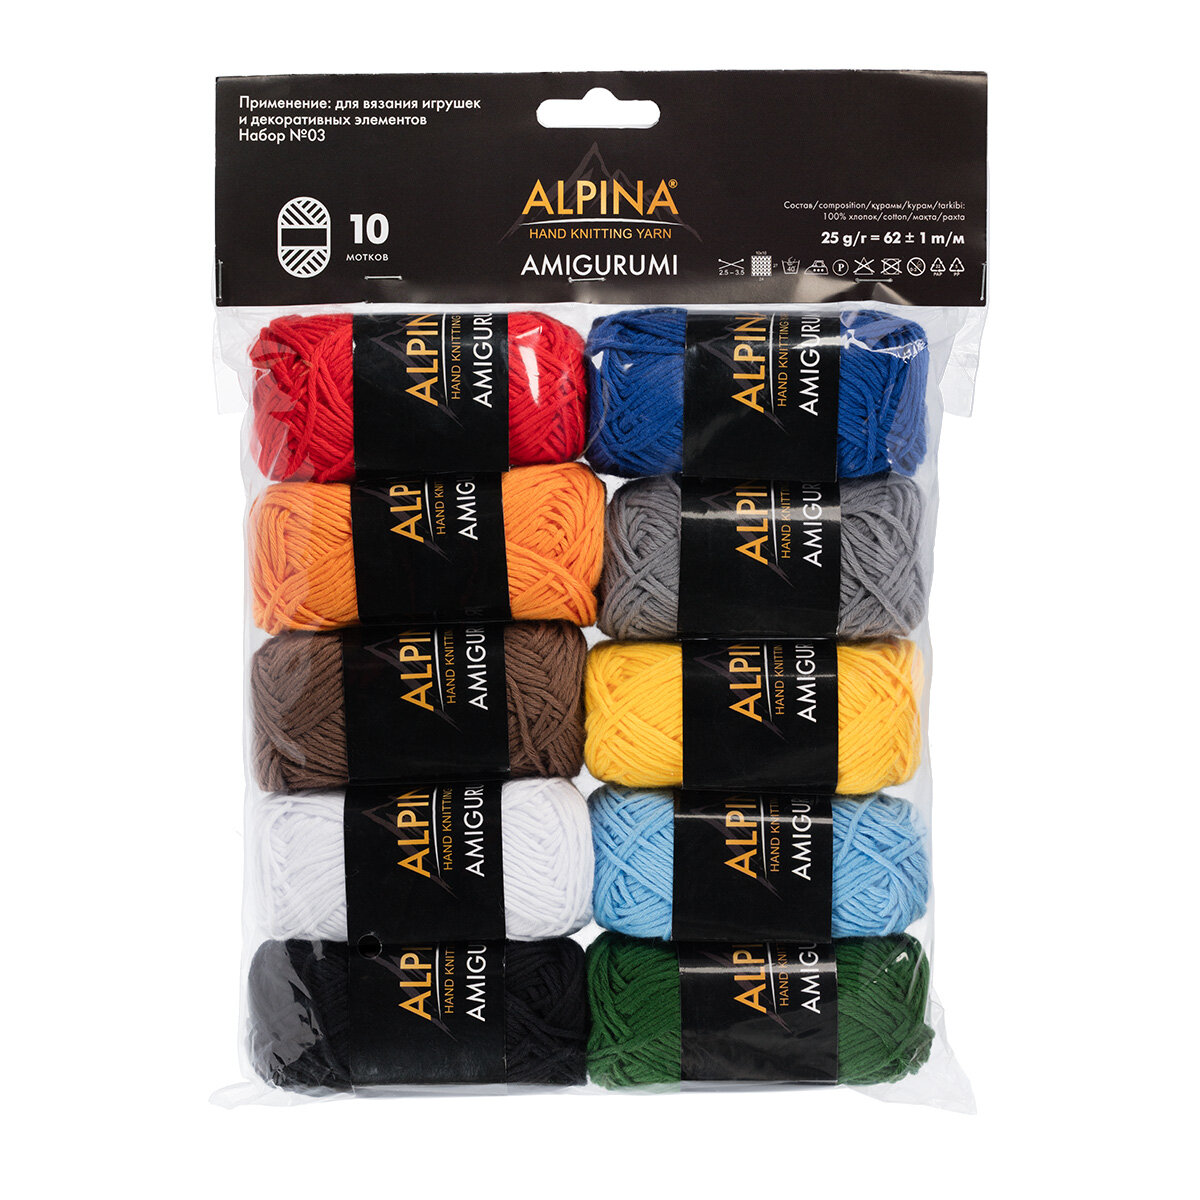 Пряжа для вязания игрушек амигуруми 10 шт по 25 г 62 м Alpina "AMIGURUMI" 100% хлопок набор ассорти Set №03